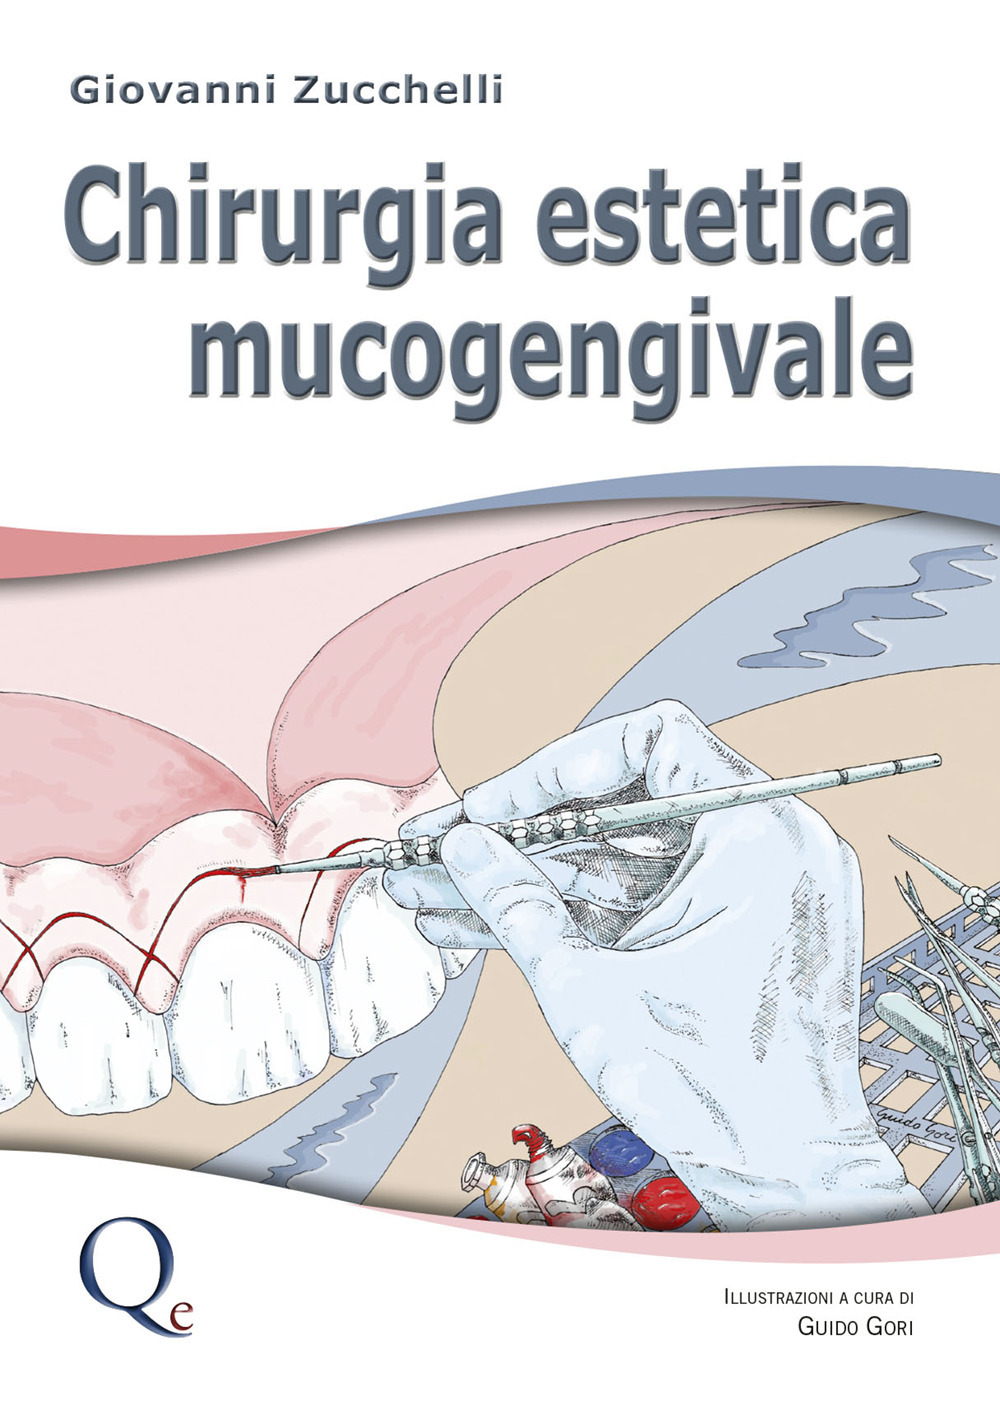 Libri Giovanni Zucchelli - Chirurgia Estetica Mucogengivale NUOVO SIGILLATO SUBITO DISPONIBILE